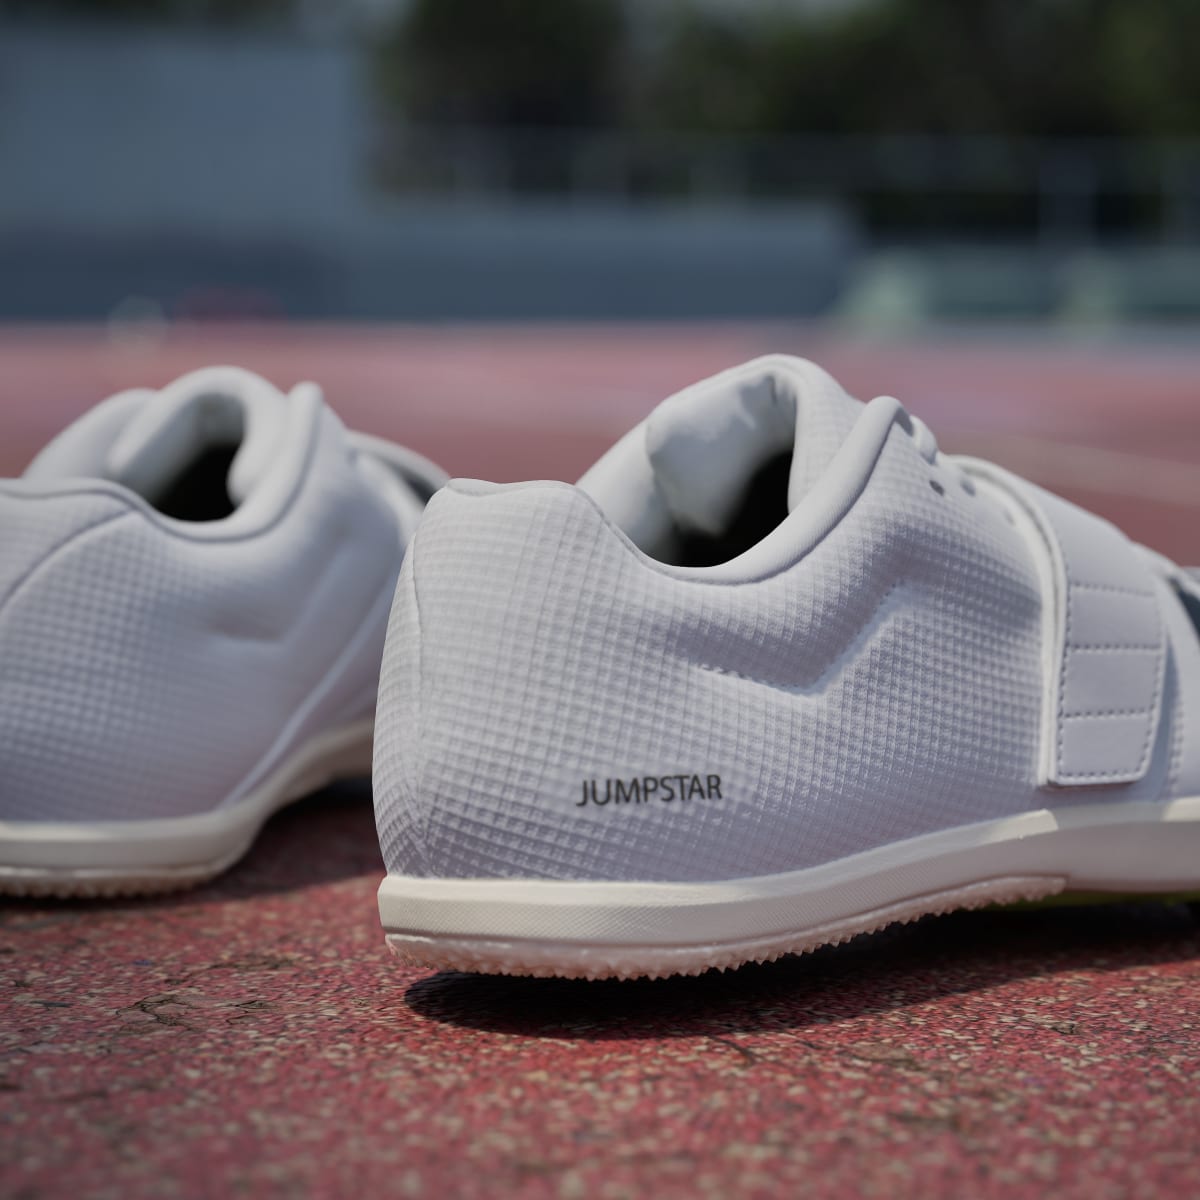 Adidas Jumpstar Shoes. 9